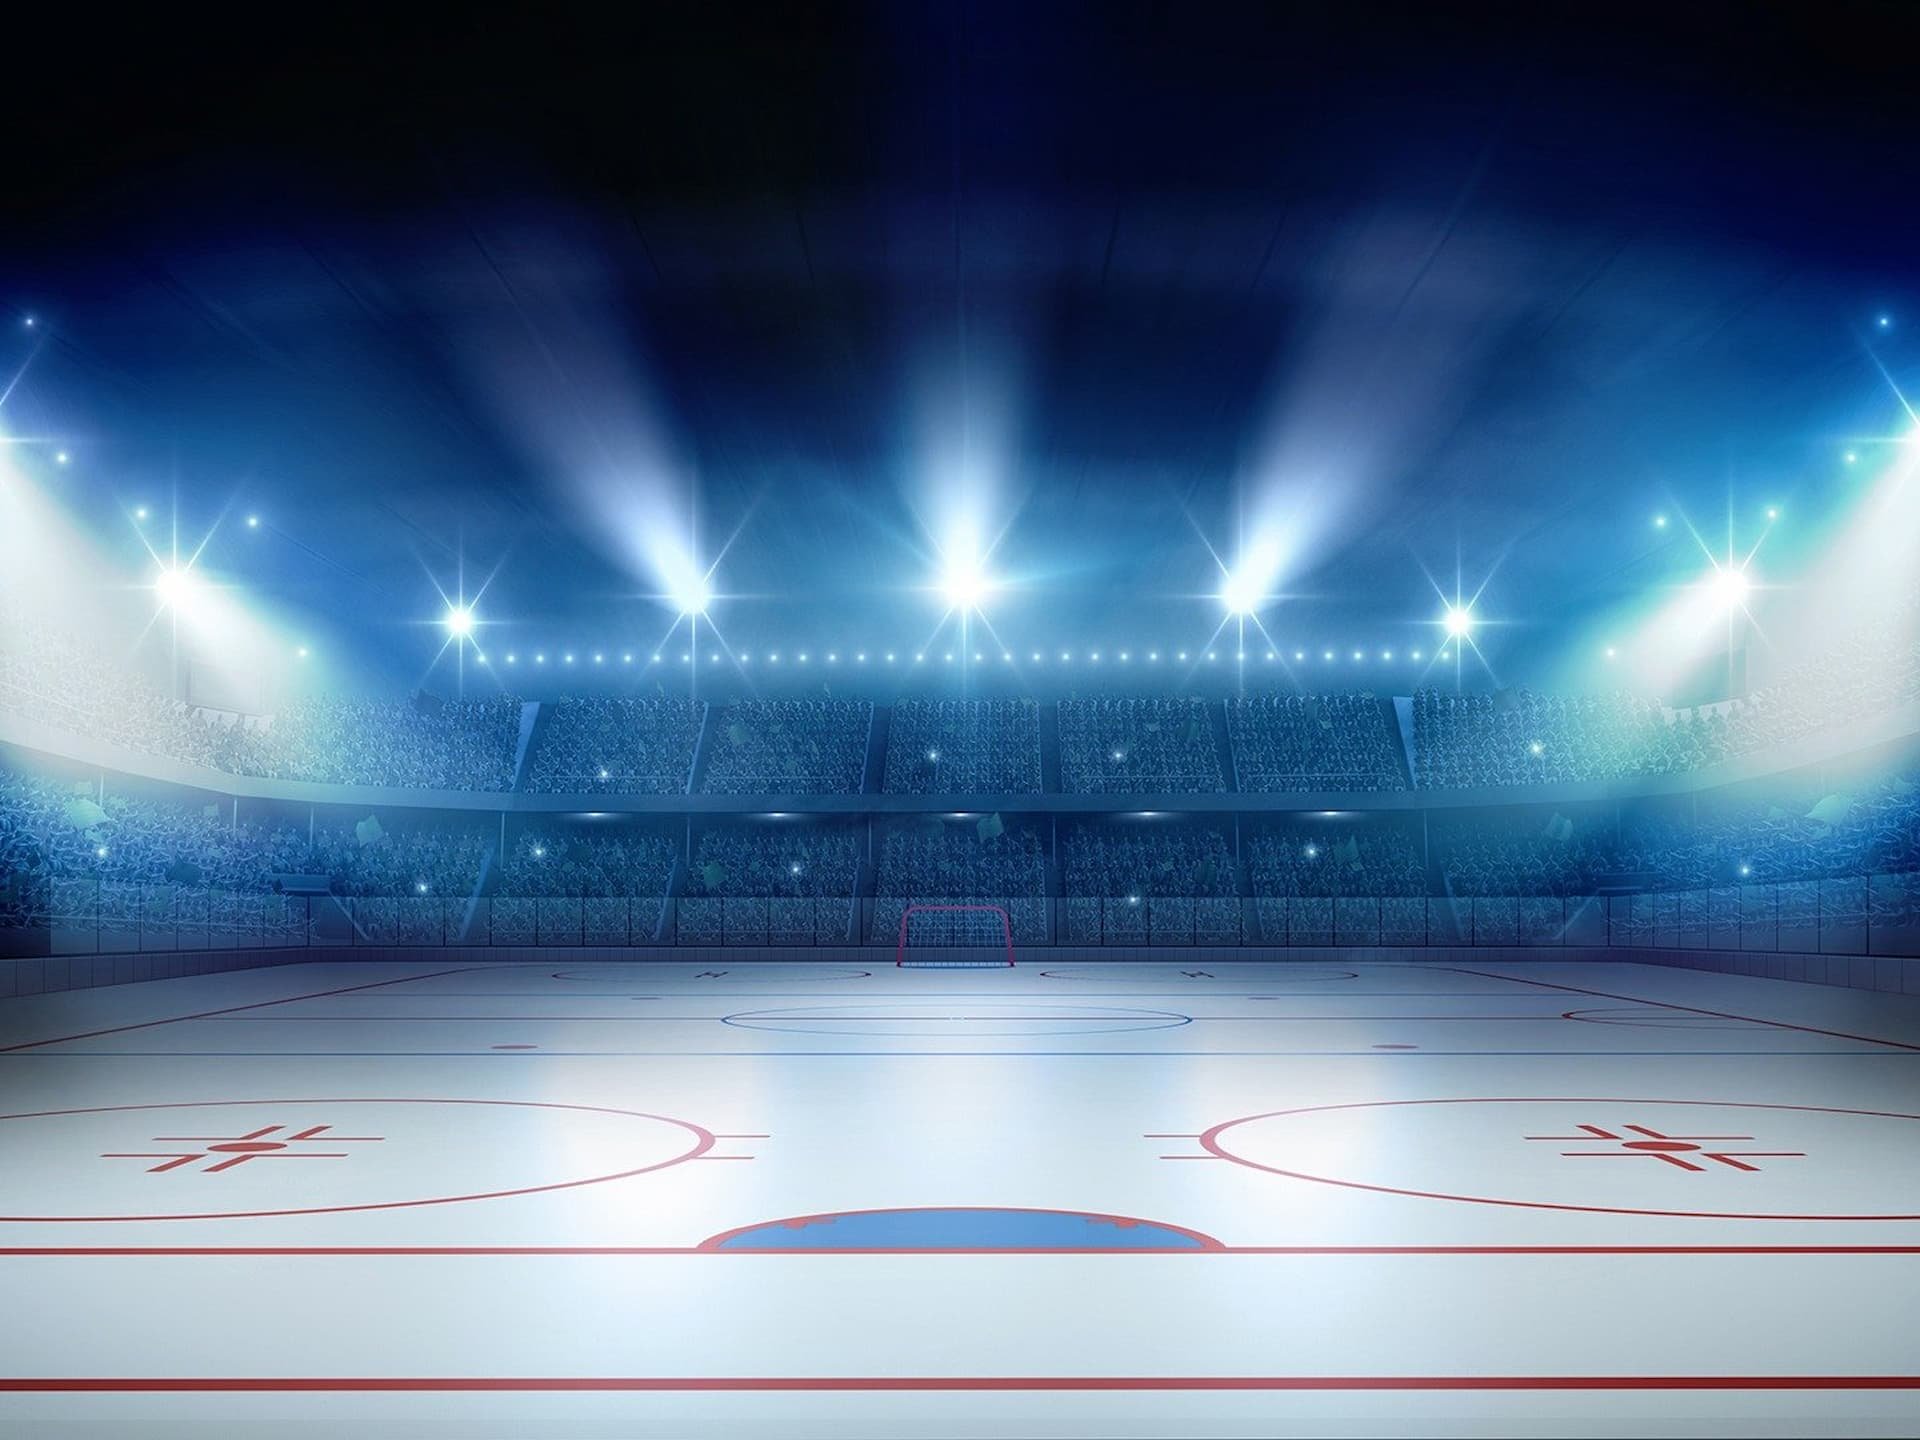 Стадион лед. Хоккейная Арена лед. Ice Arena : хоккейная площадка. Хоккейная Арена софиты. Хоккейное поле с воротами.